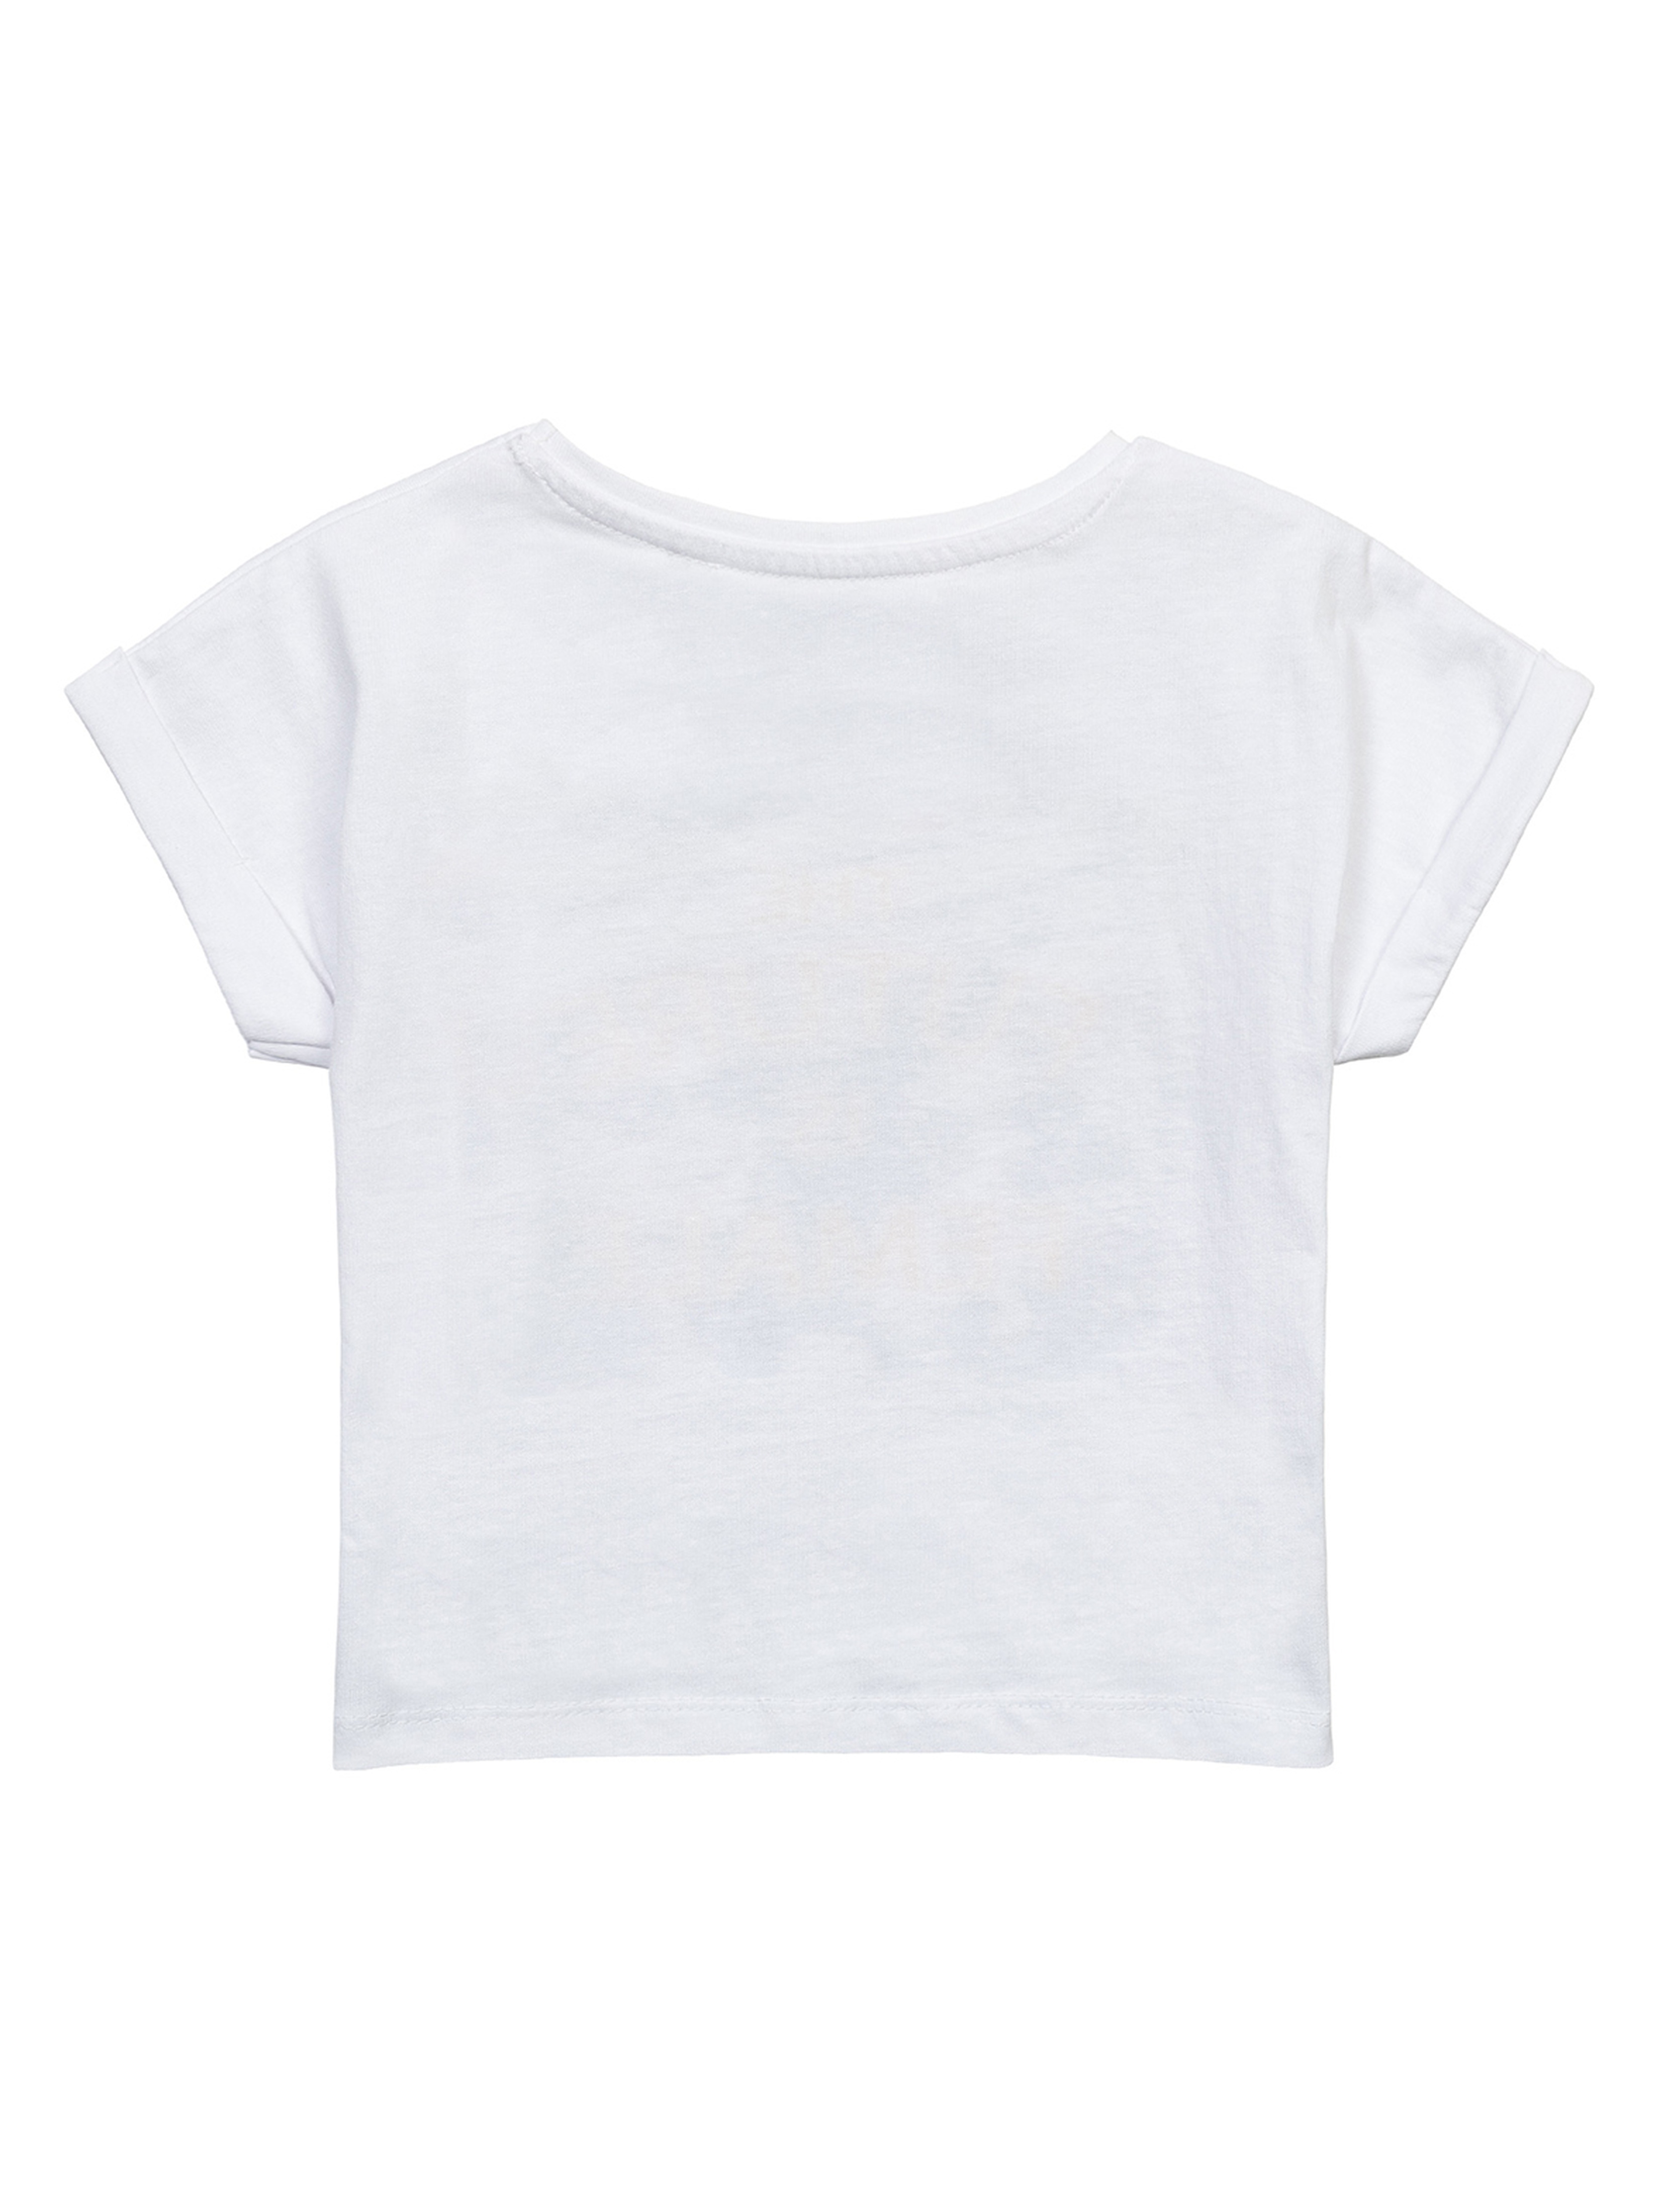 Biały t-shirt bawełniany dla dziewczynki z nadrukiem